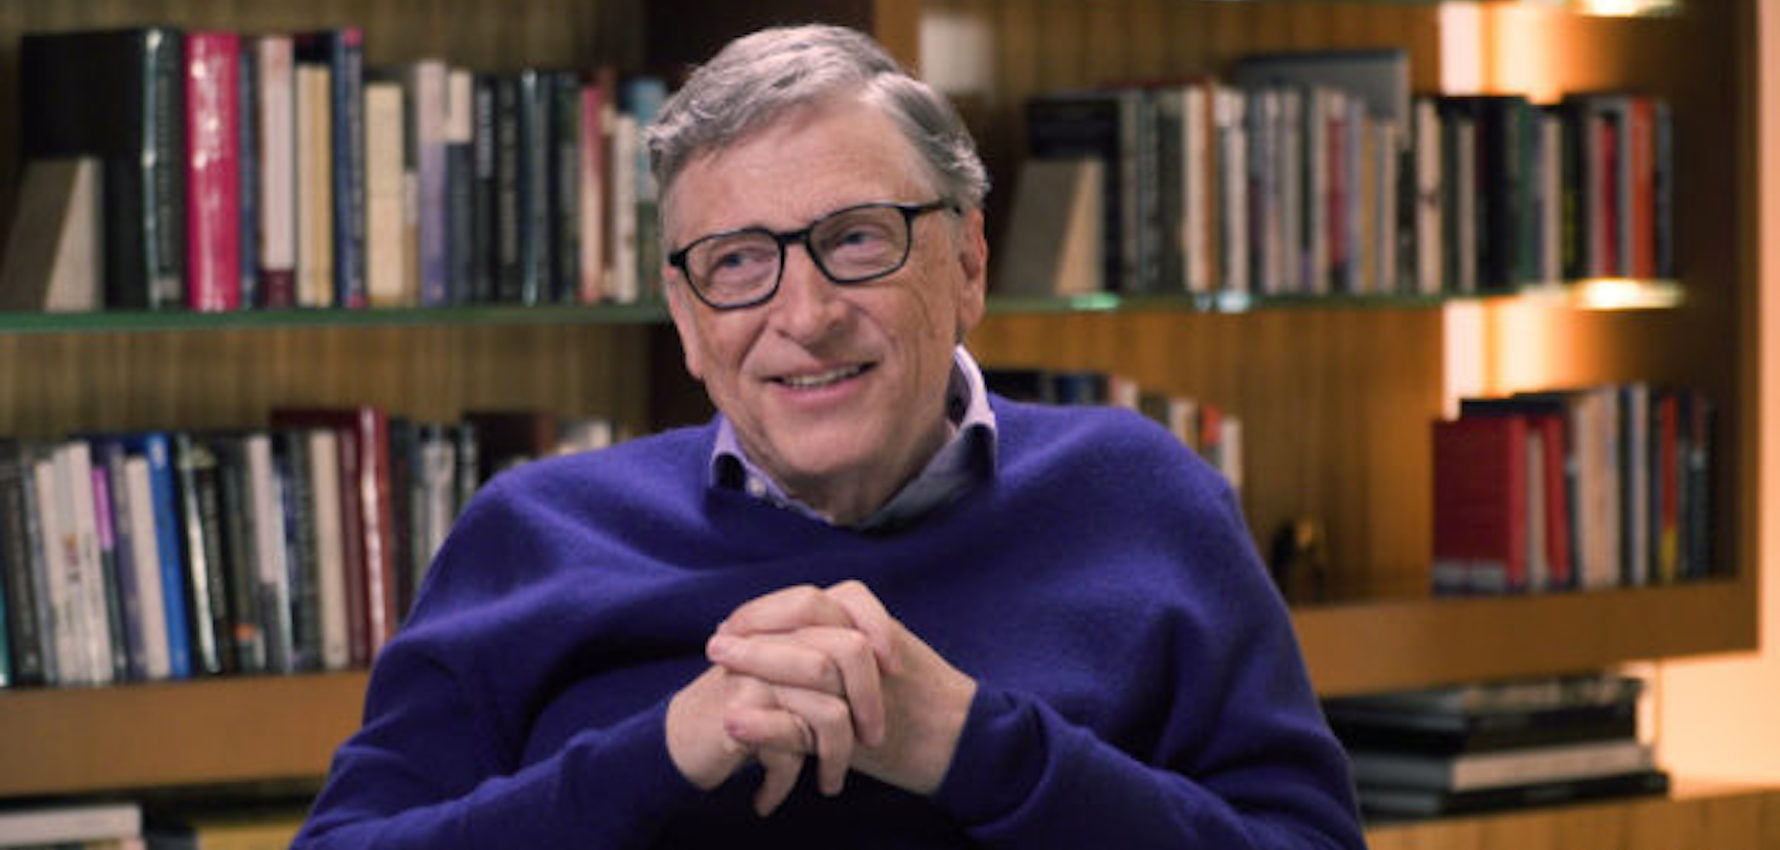 Bill Gates COVID-19